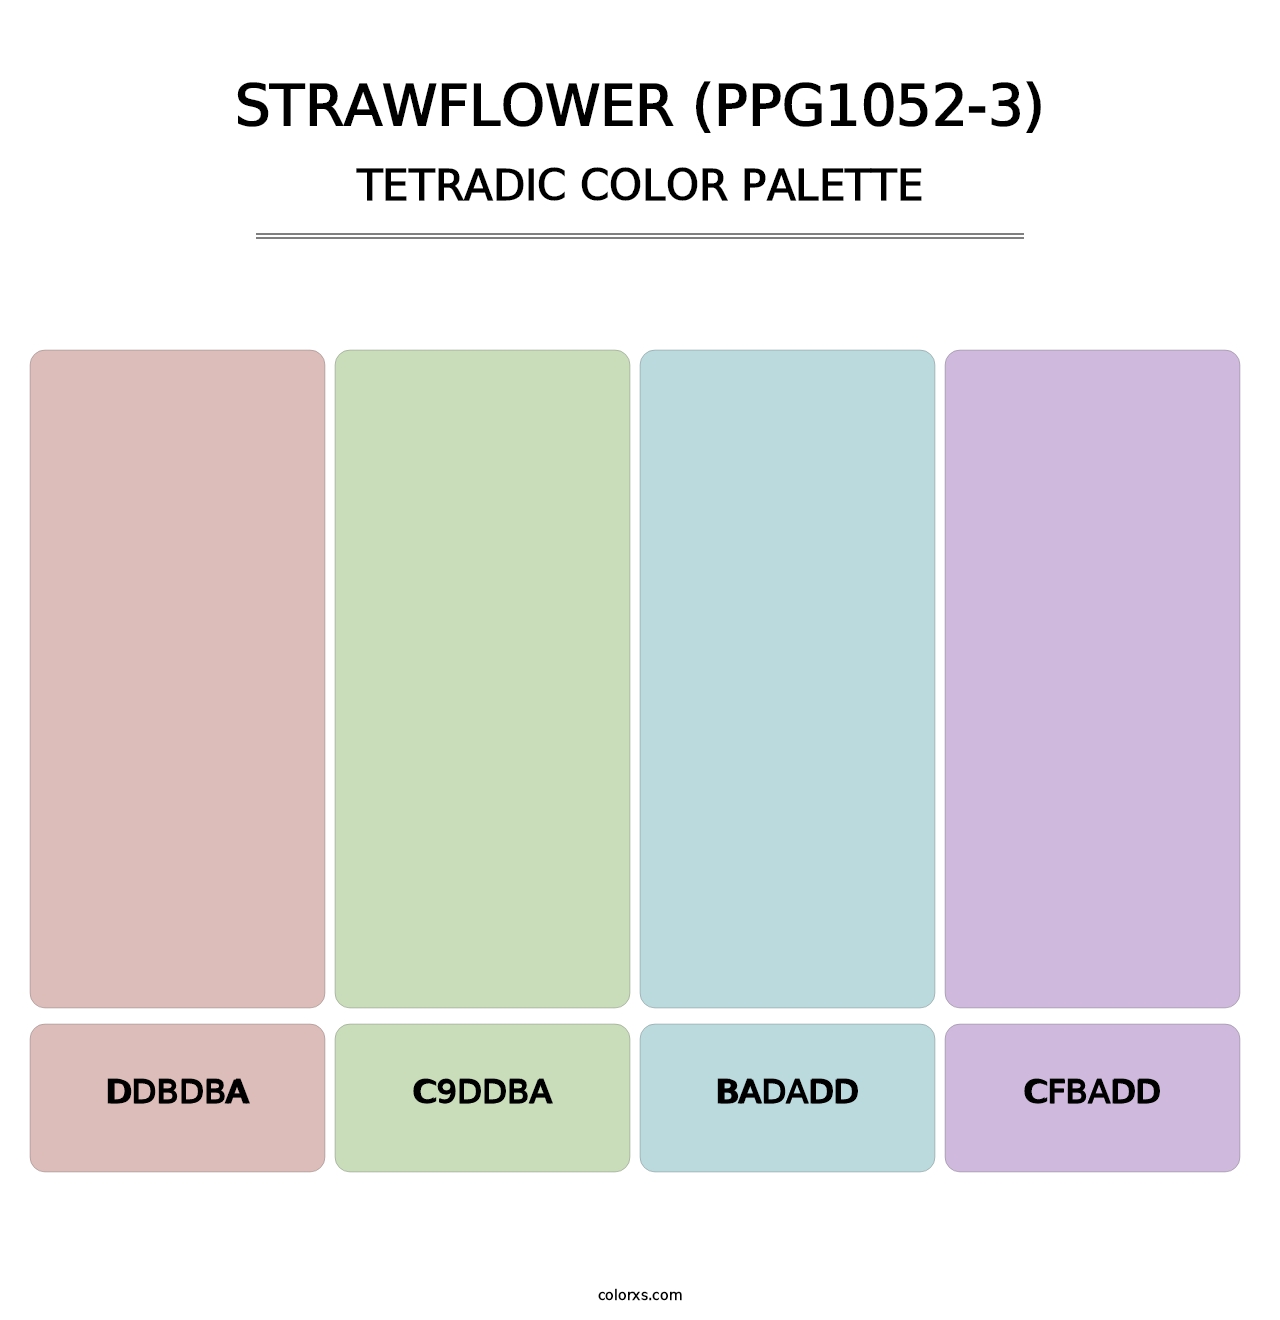 Strawflower (PPG1052-3) - Tetradic Color Palette